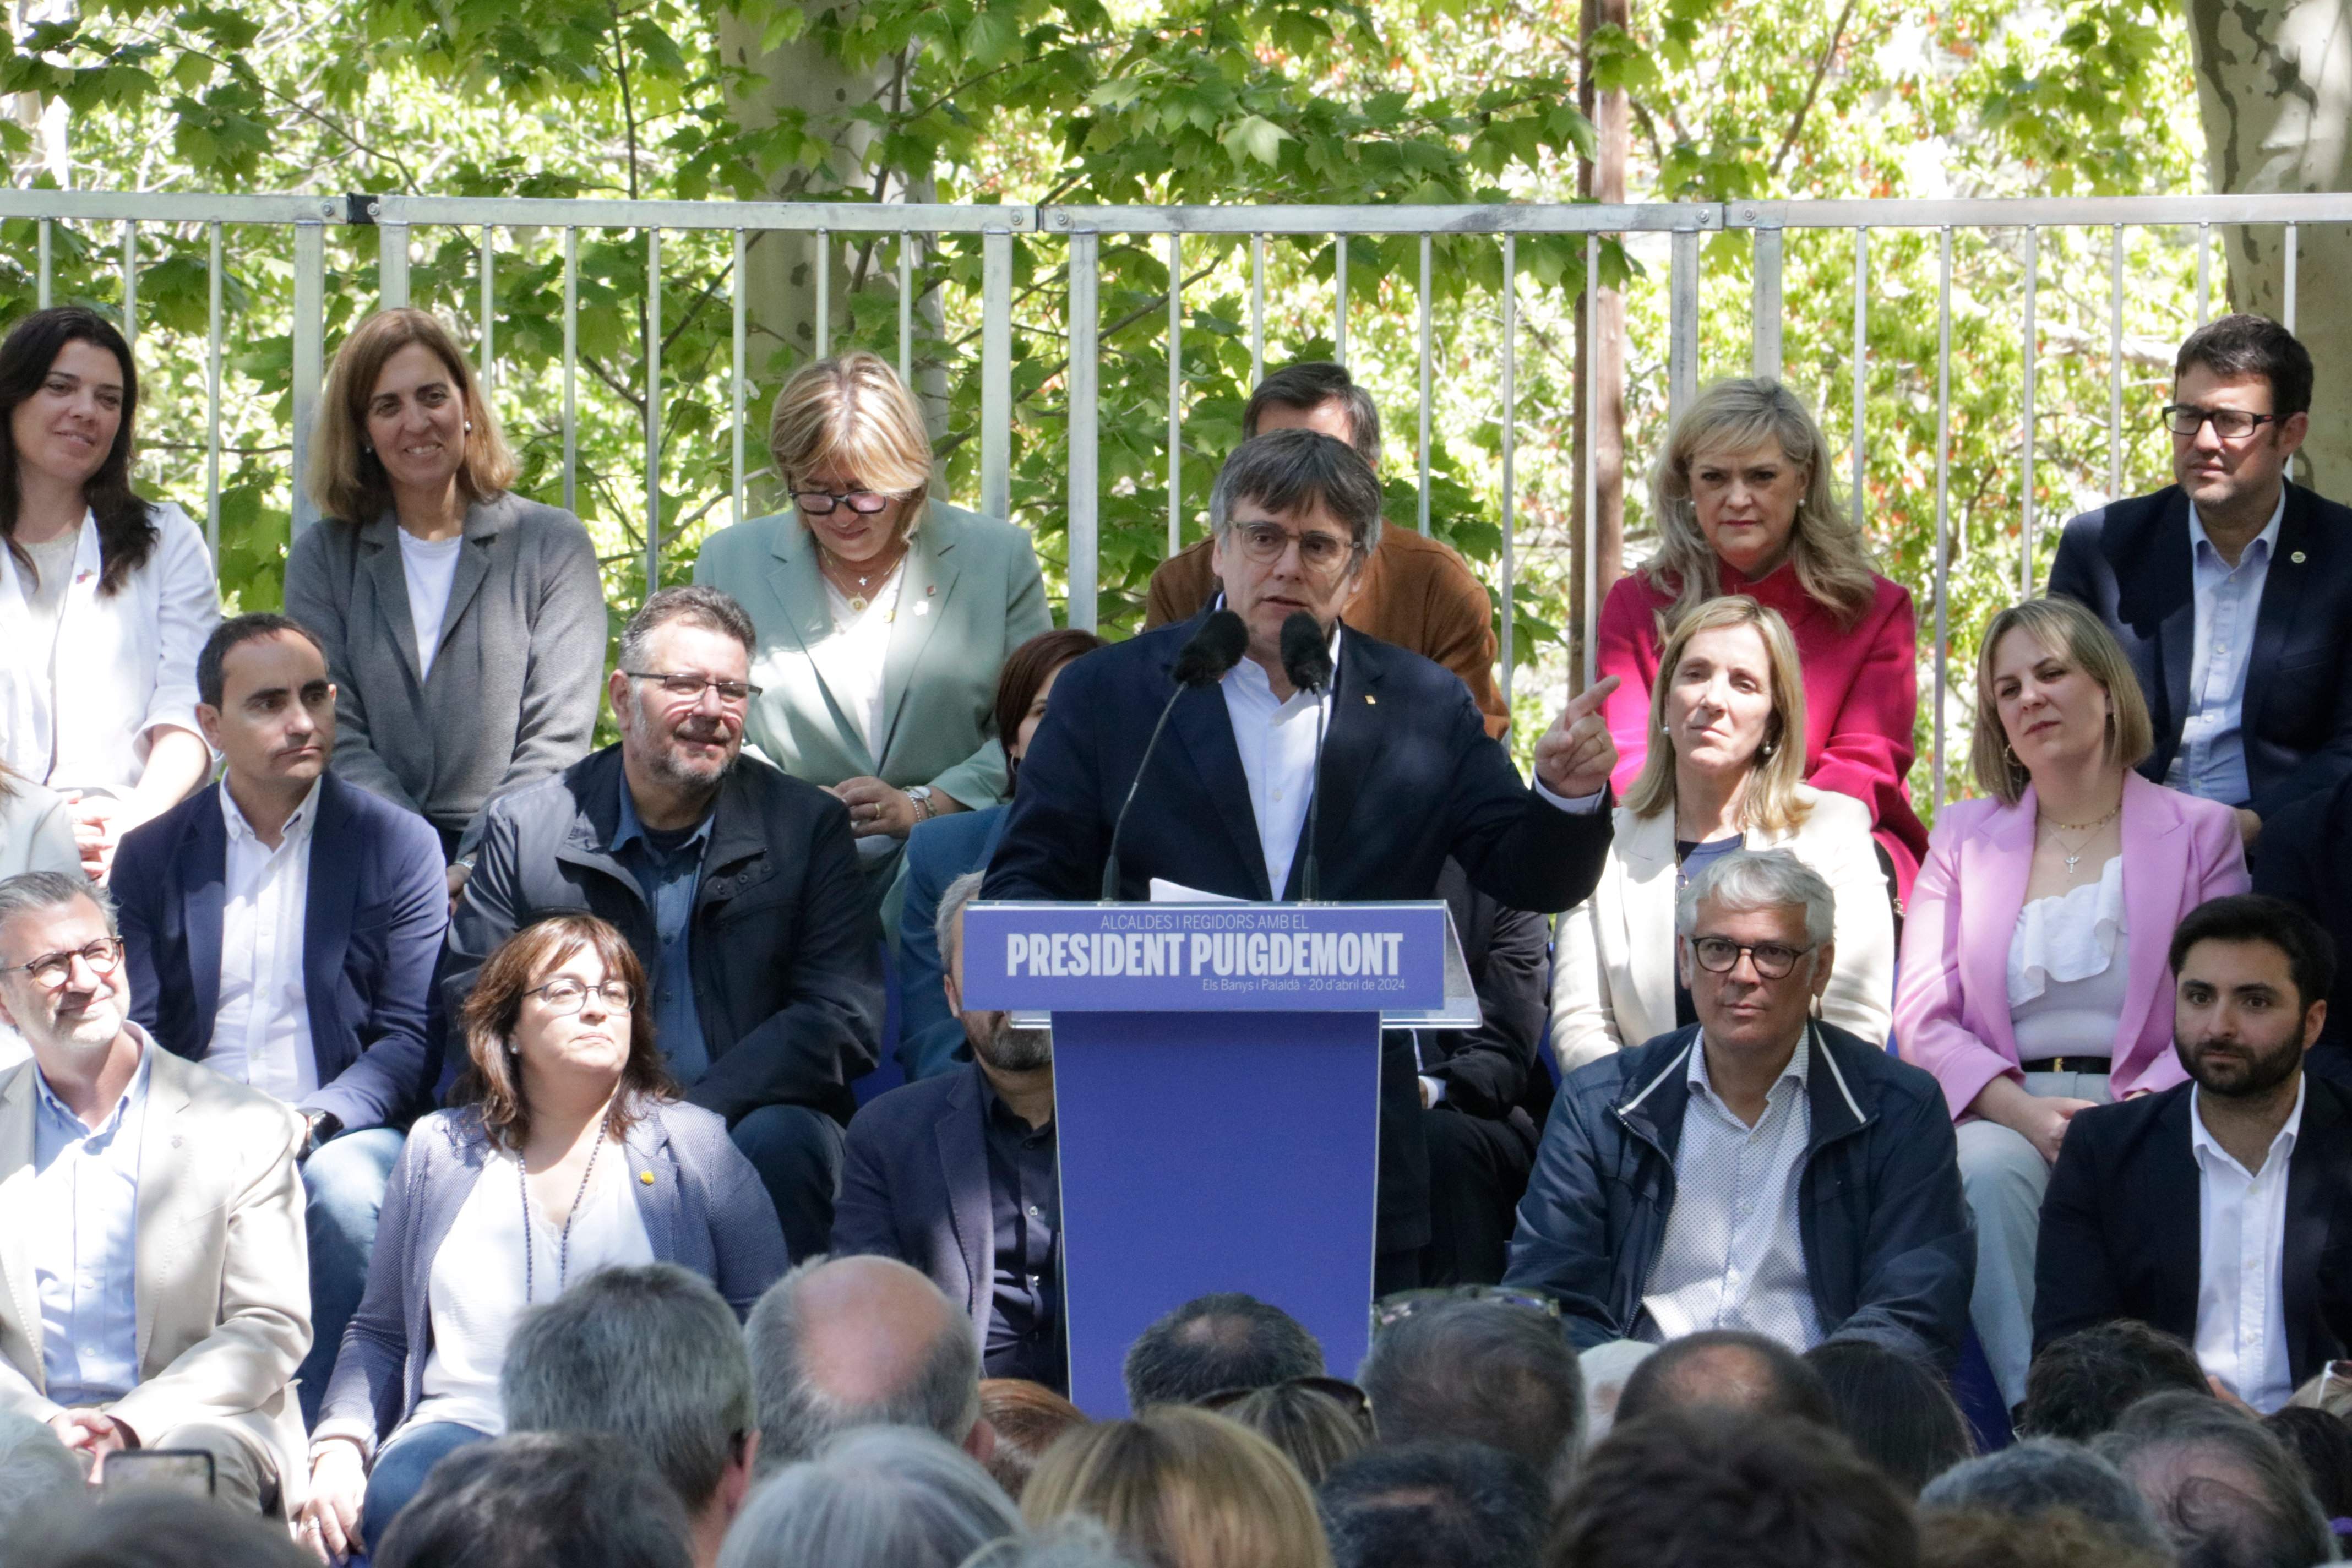 El manifiesto en apoyo de Puigdemont para el 12-M recoge 5.000 firmas en menos de una semana